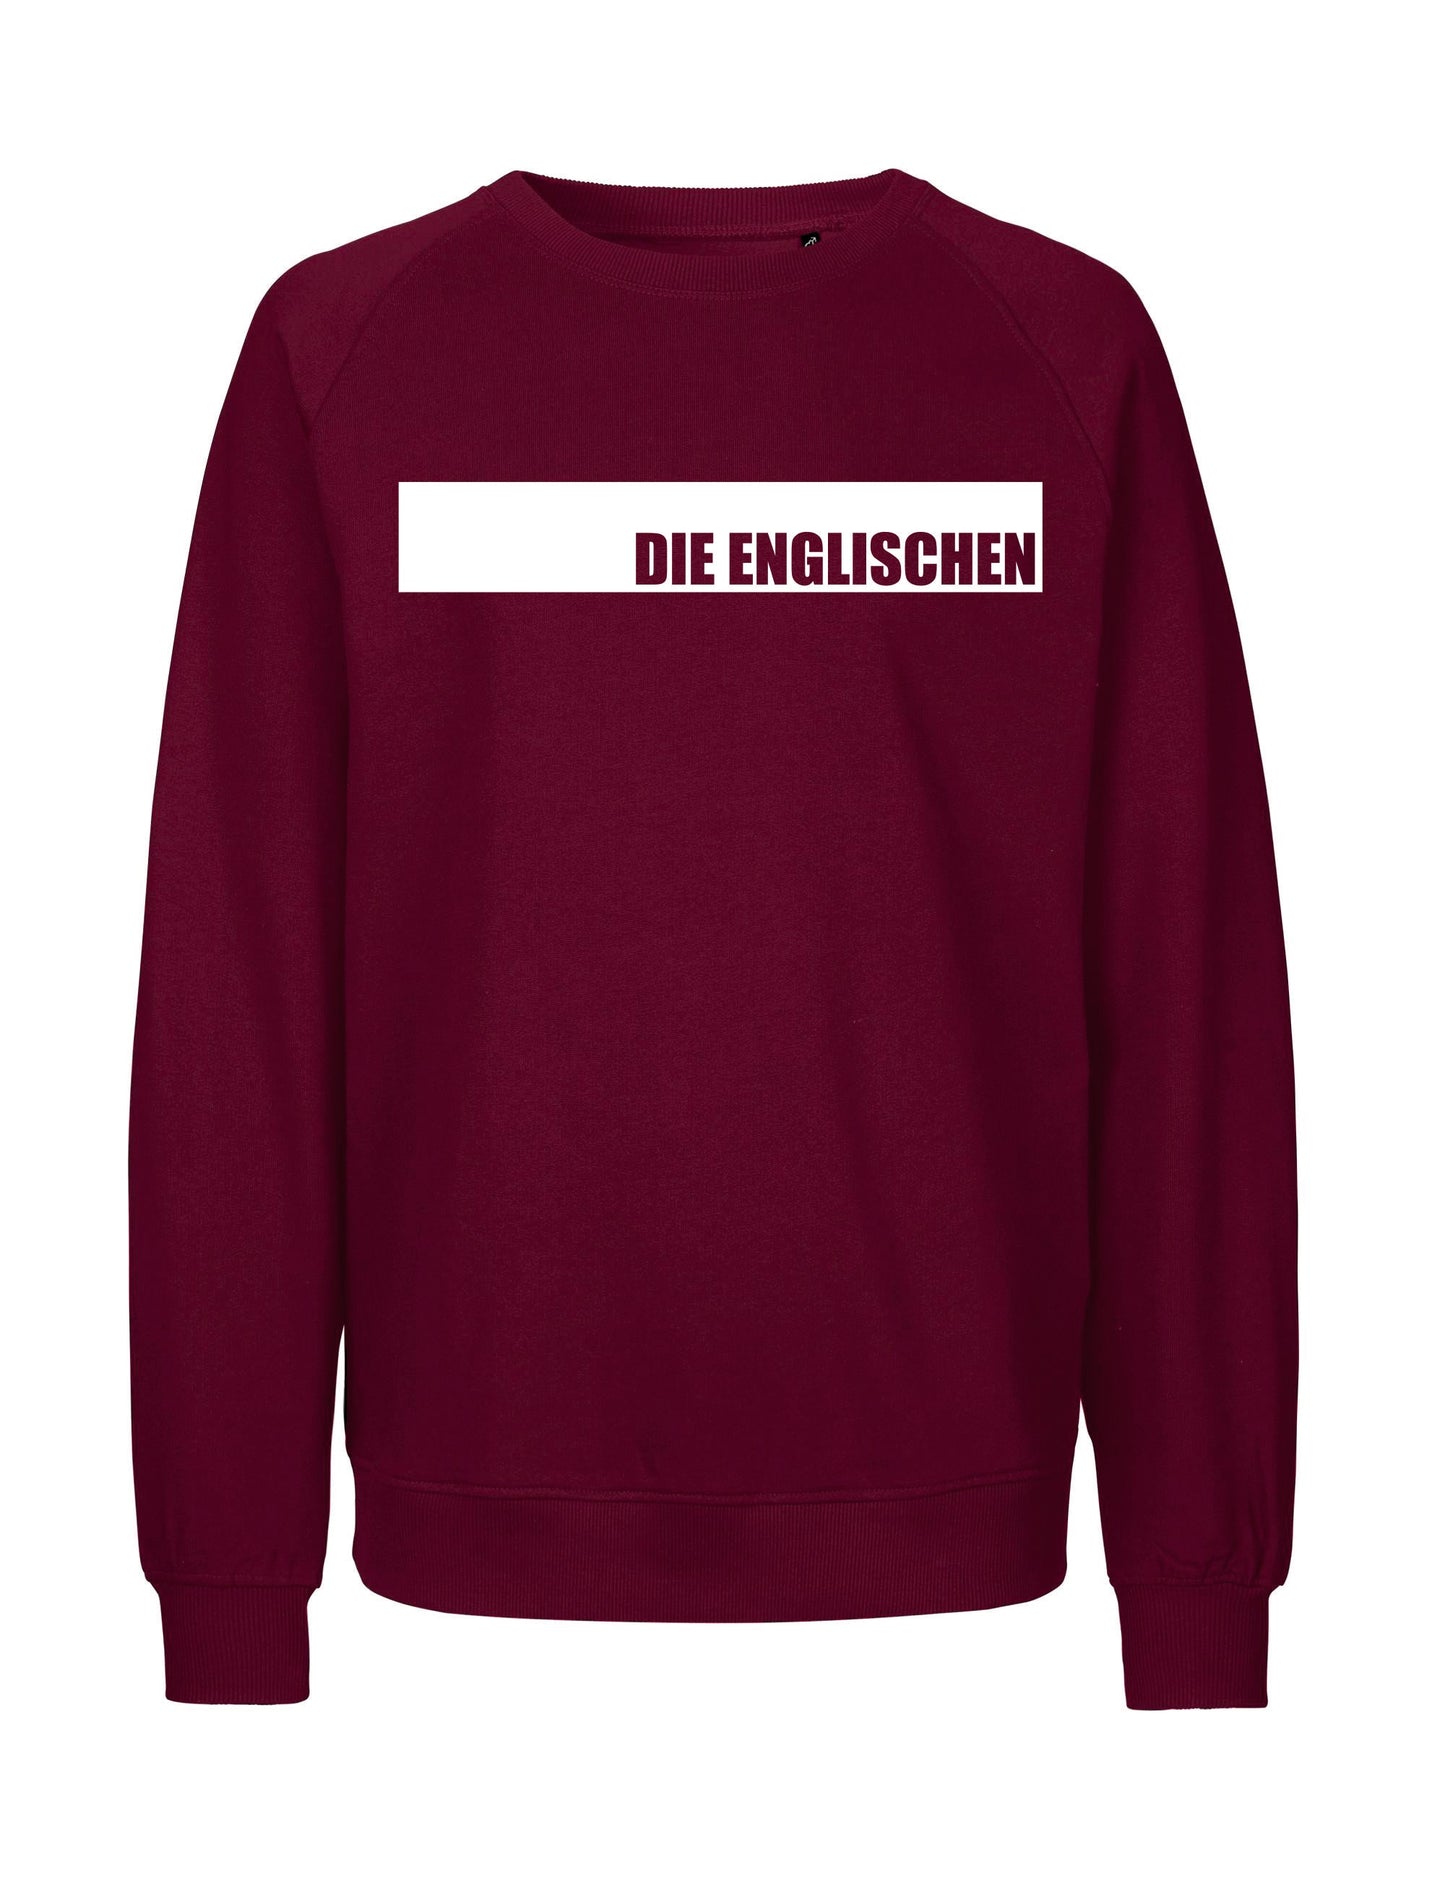 Sweatshirt mit Brustprint "DIE ENGLISCHEN" - Unisex